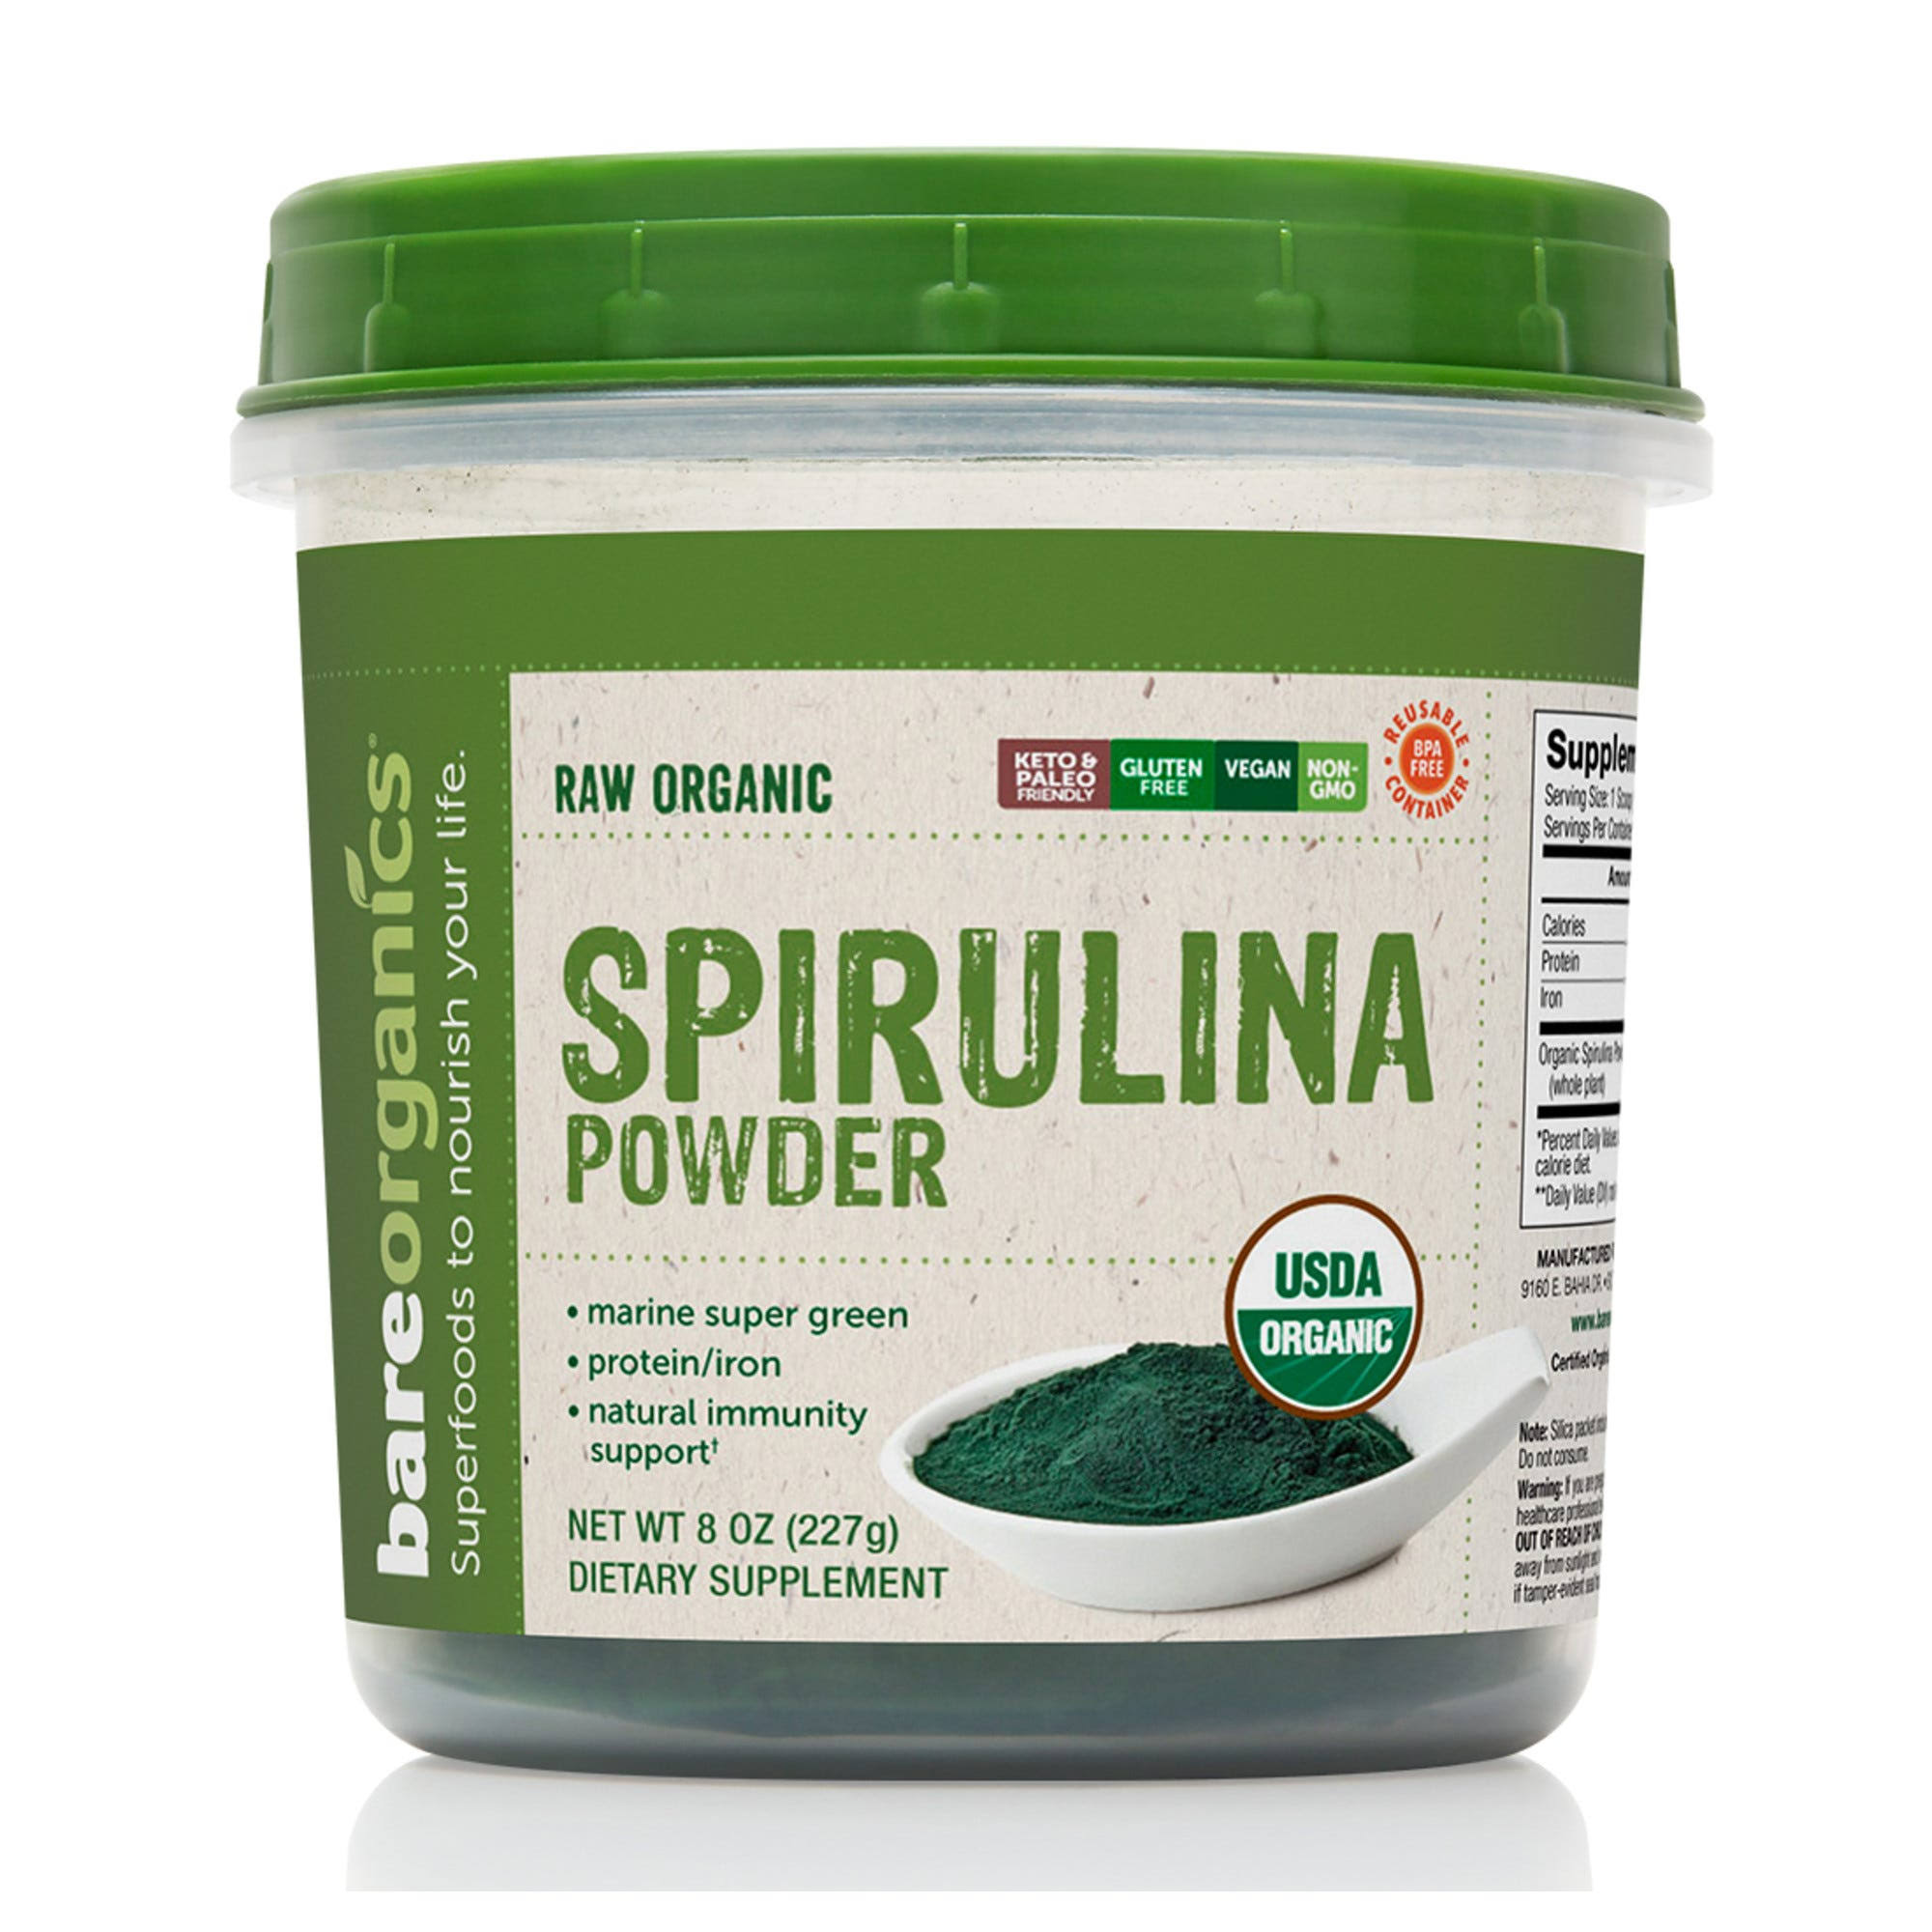 BareOrganics - Raw Organic Spirulina Powder - 8 oz (227 Grams)